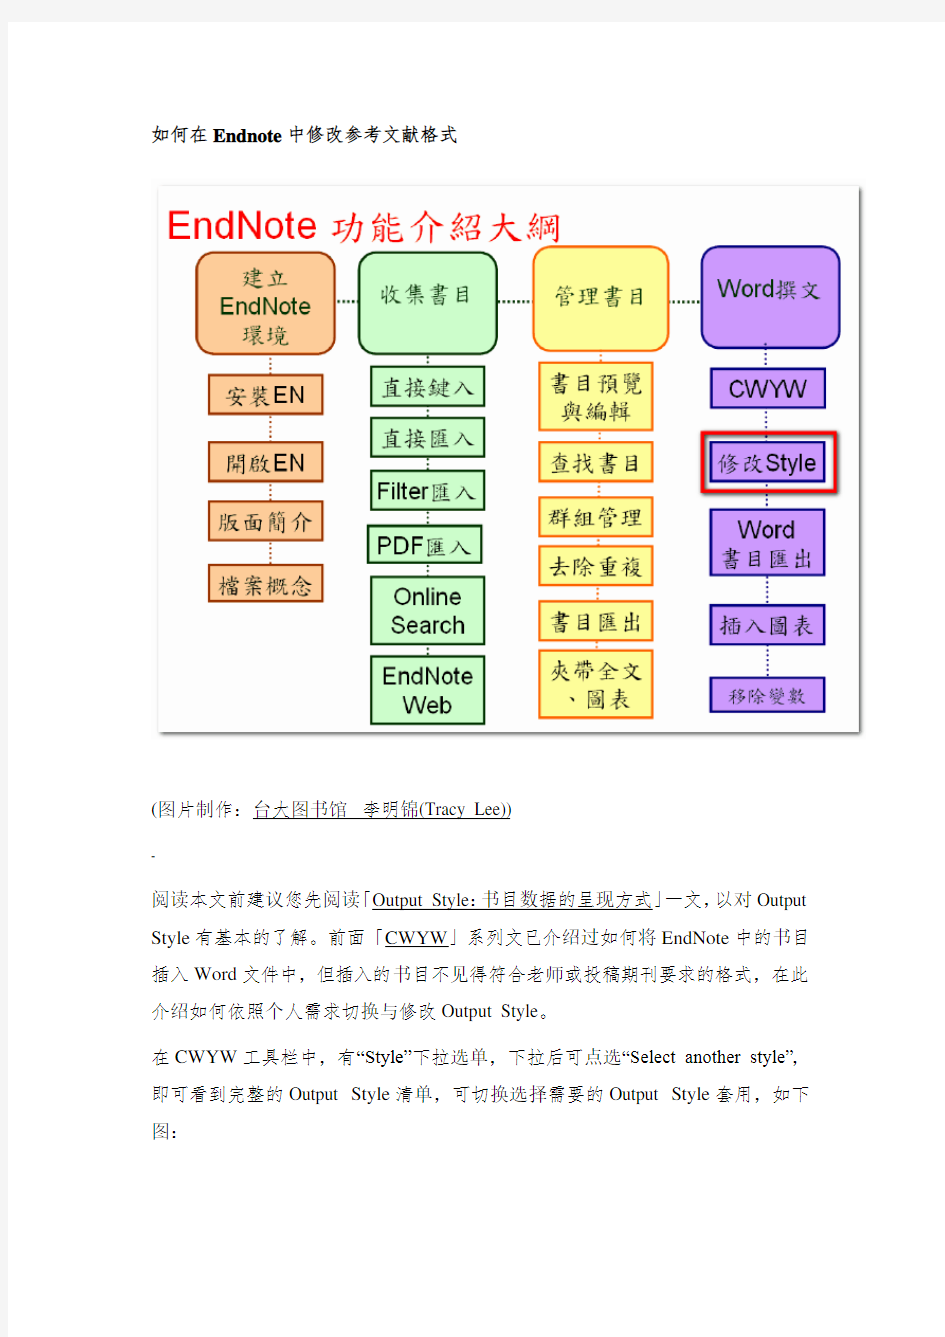 在Endnote中修改参考文献格式的方法